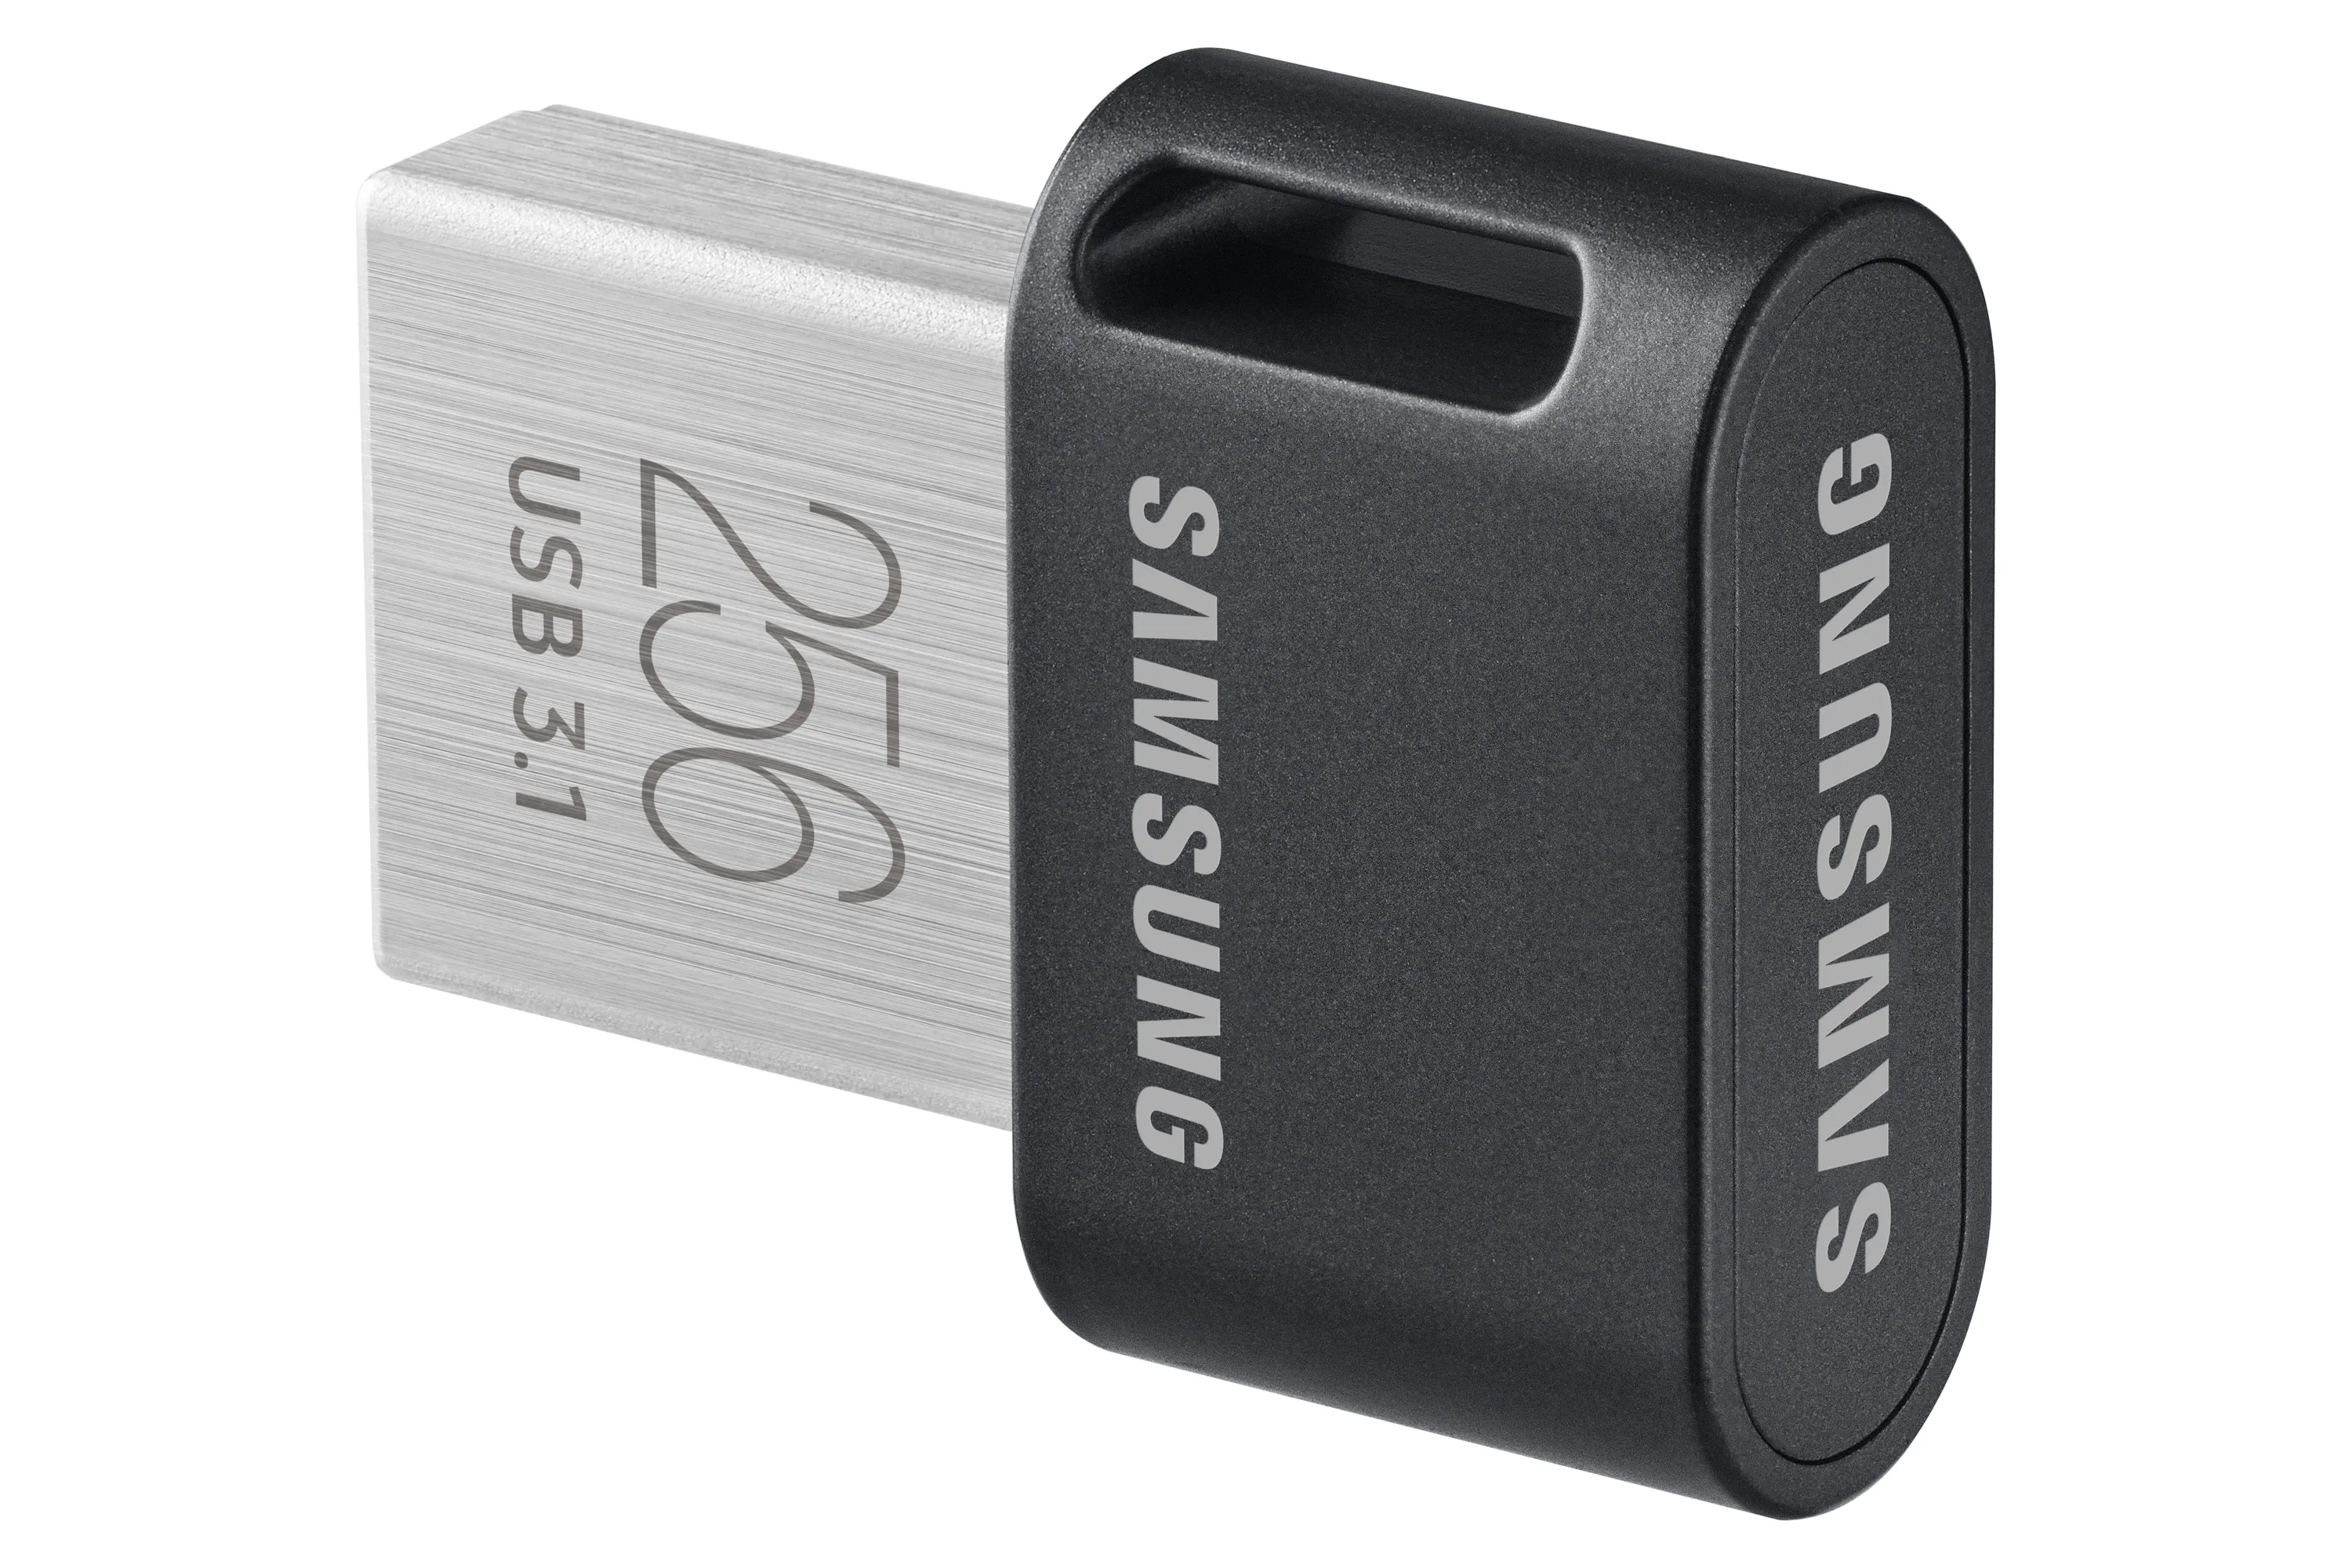 Vente SAMSUNG FIT PLUS 256Go USB 3.1 Samsung au meilleur prix - visuel 10